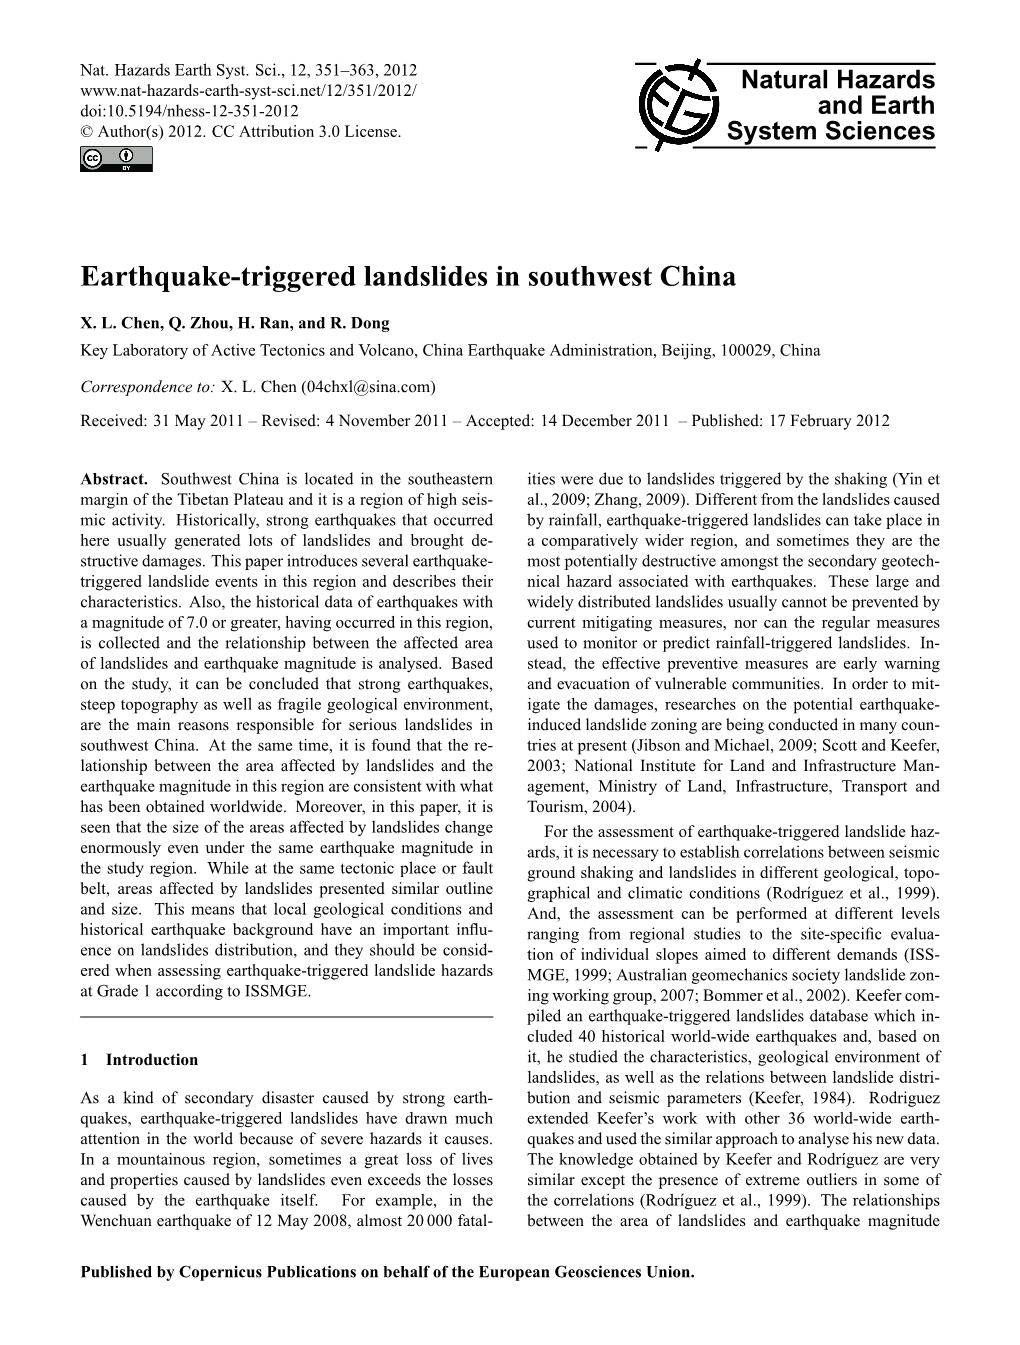 Earthquake-Triggered Landslides in Southwest China